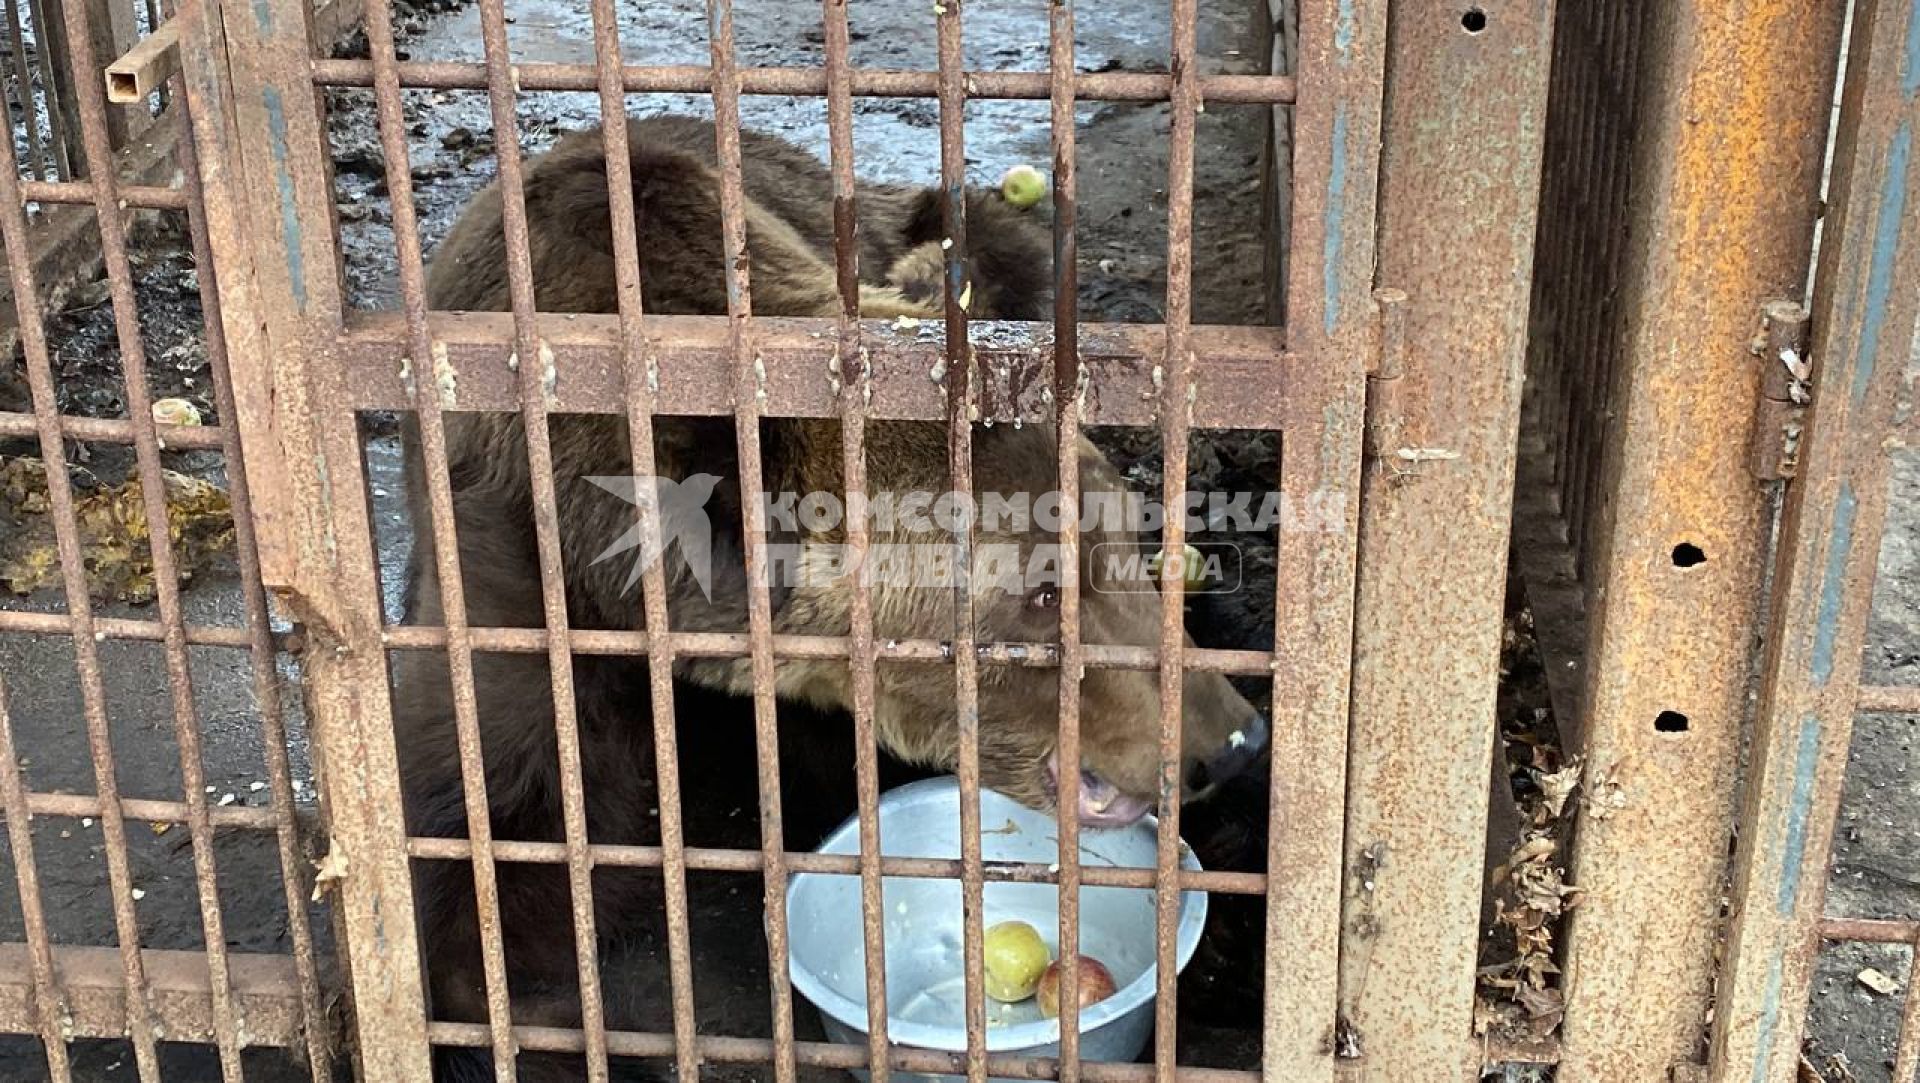 Сочи. Сочинский сафари-парк превратился в тюрьму для животных. Медведь в клетке.